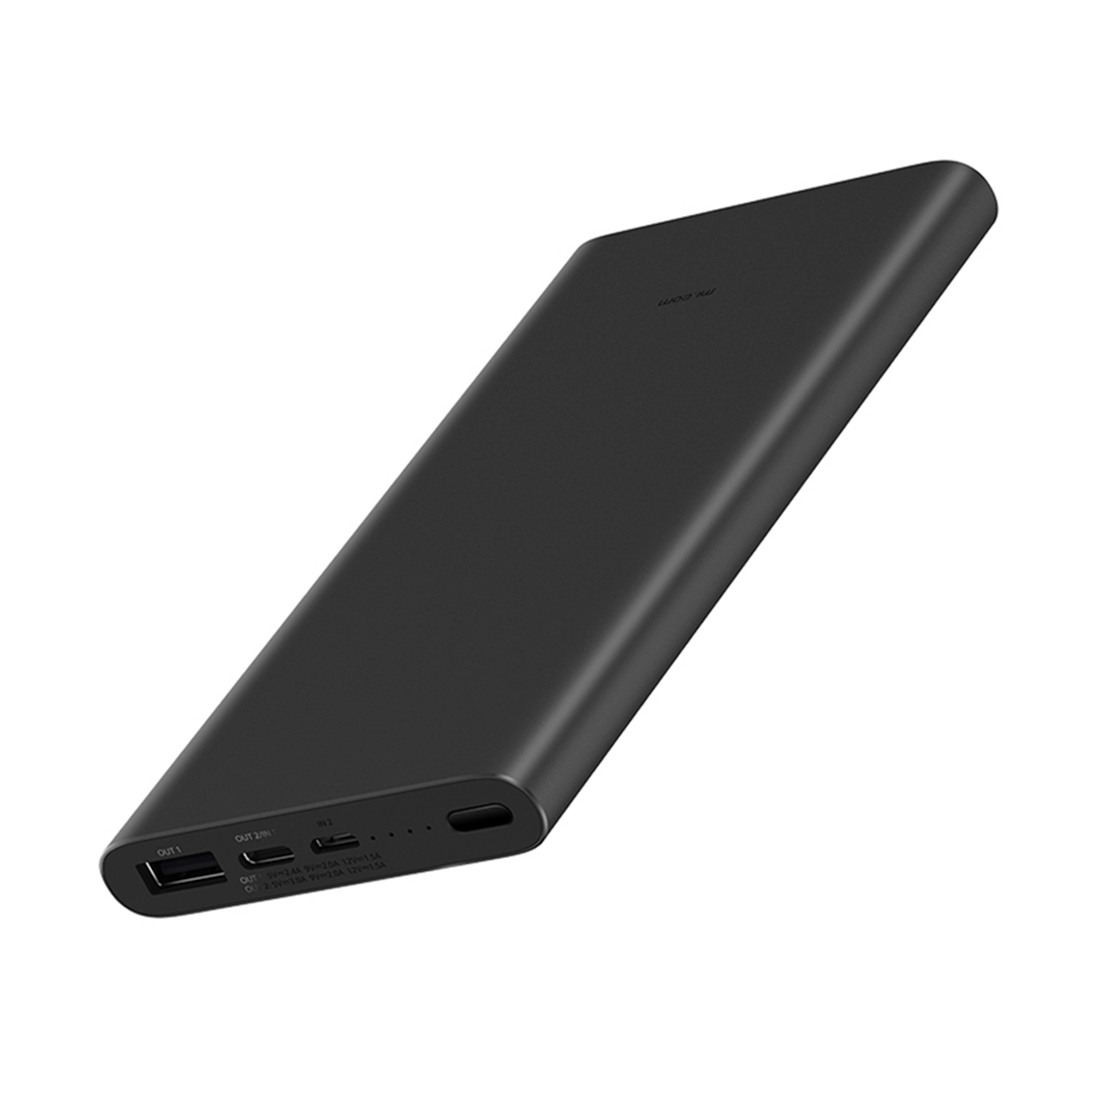 Batterie Externe/Power Bank Xiaomi Mi 3 10000 mAh - QuickCharge 3.0 - Charge Rapide 18W - 2x USB-A, 1x USB-C, 1 x Micro USB - Couleur Noire